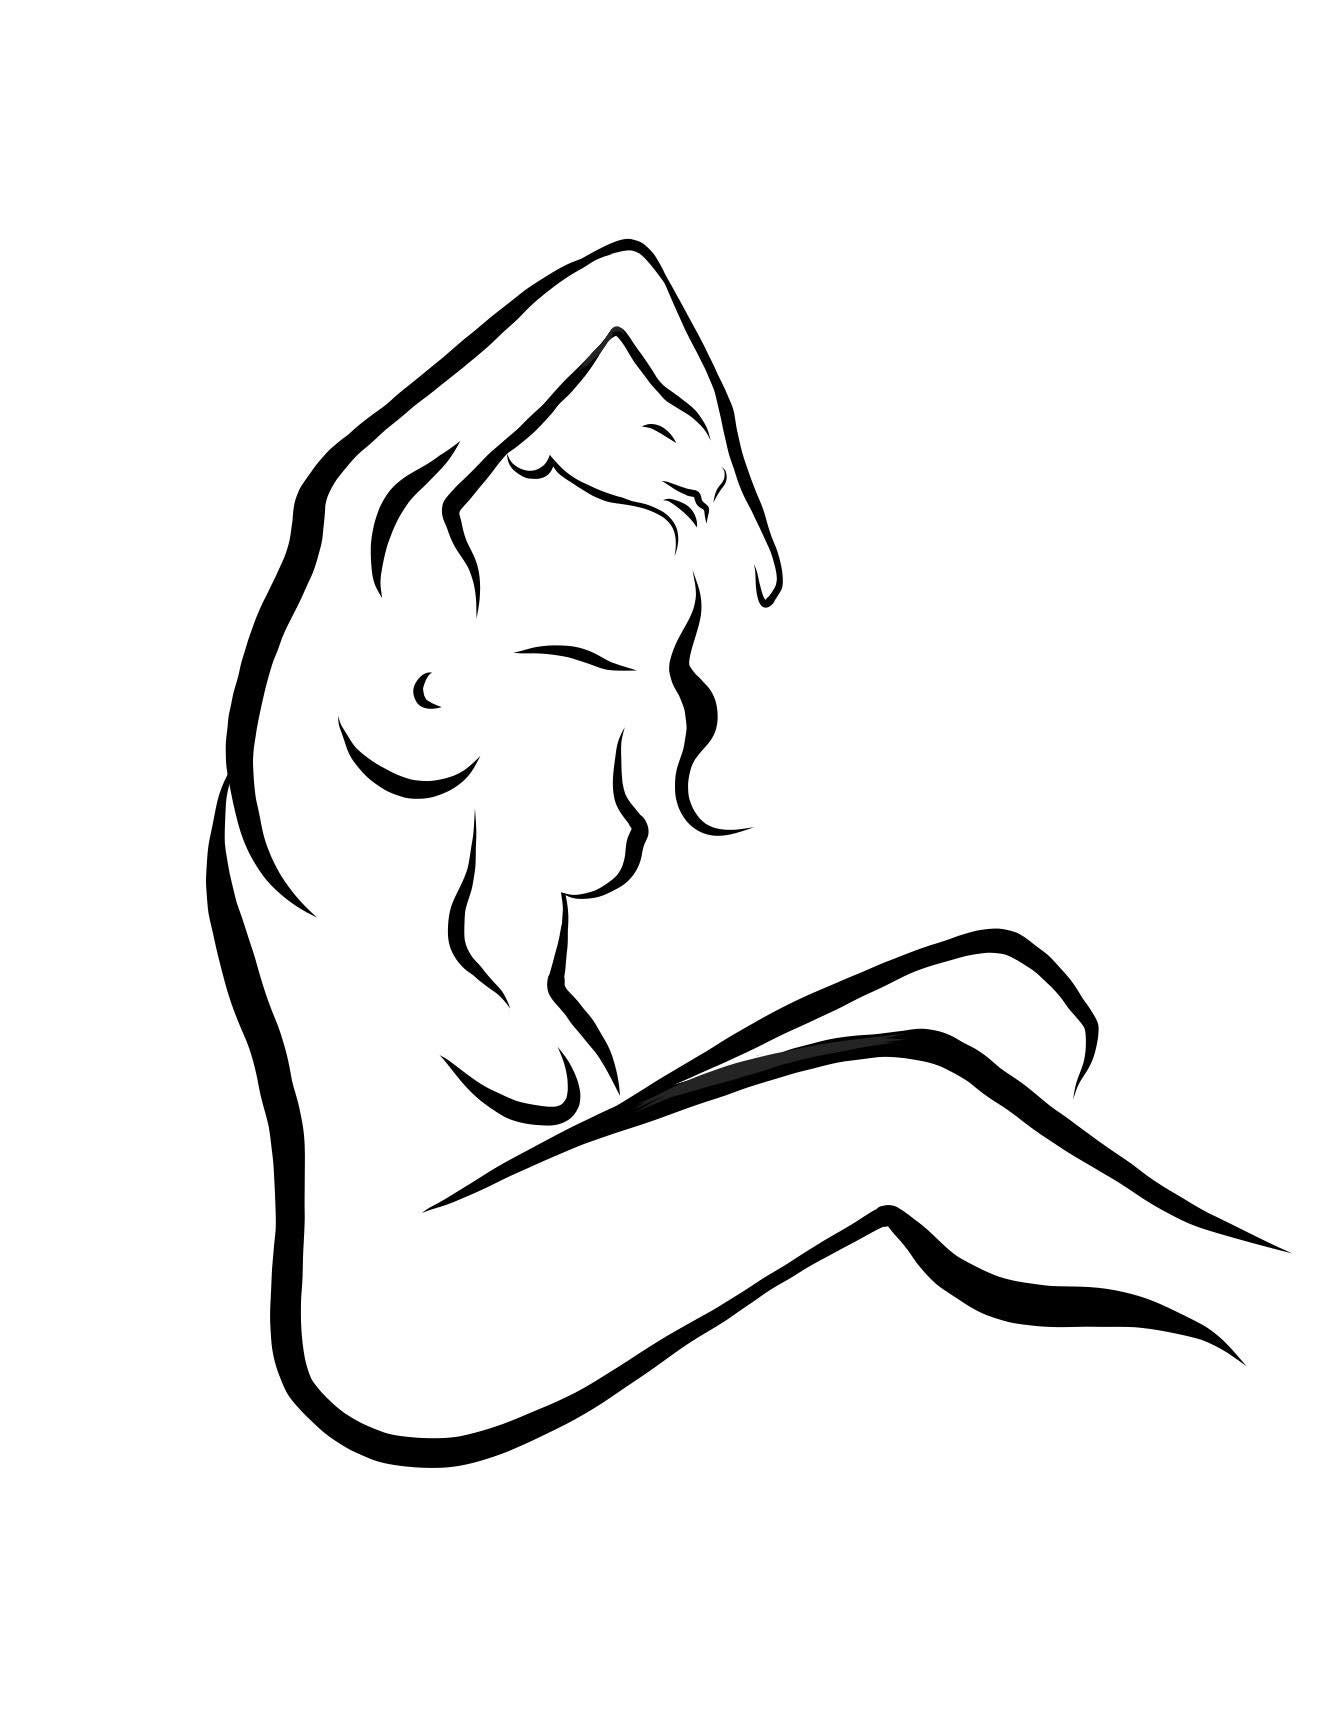 Haiku #18, 1/50 - Digitale Vektorzeichnung Sitzender weiblicher Akt Frau Figur Arm hoch